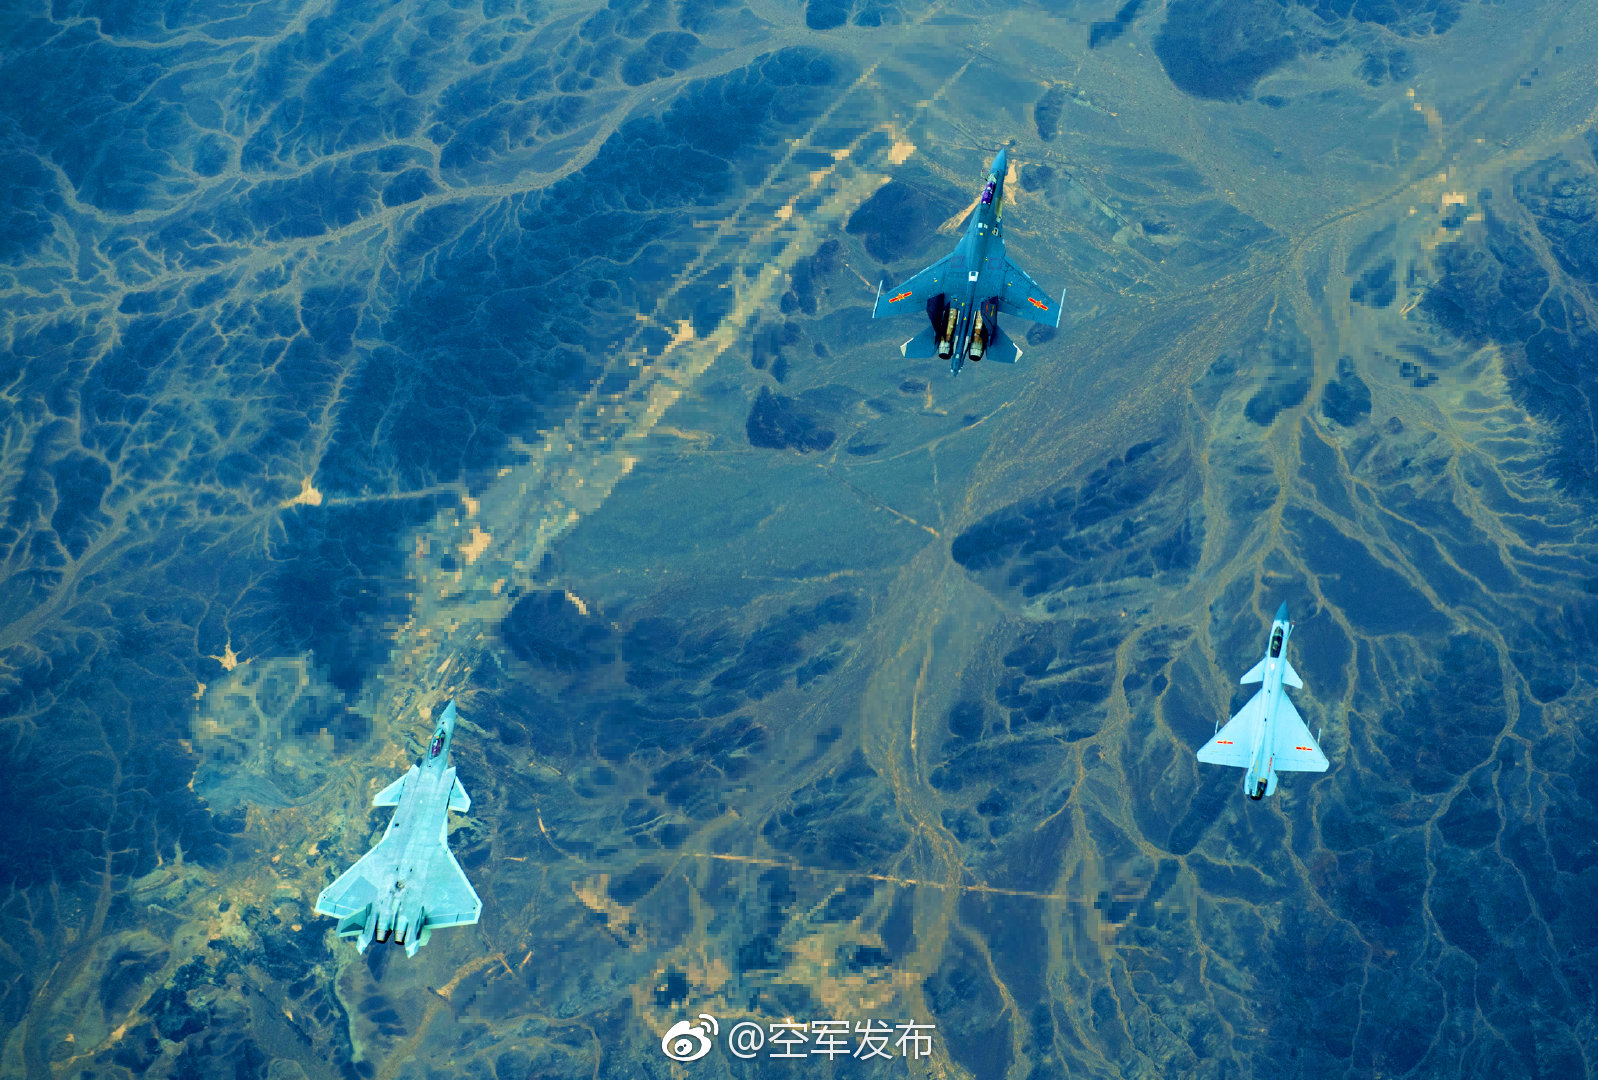 图为“空军发布”微博11月23日发布的歼-10、歼-16、歼-20战机首次同框出现宣传图片。（拖拽图片可查看大图）